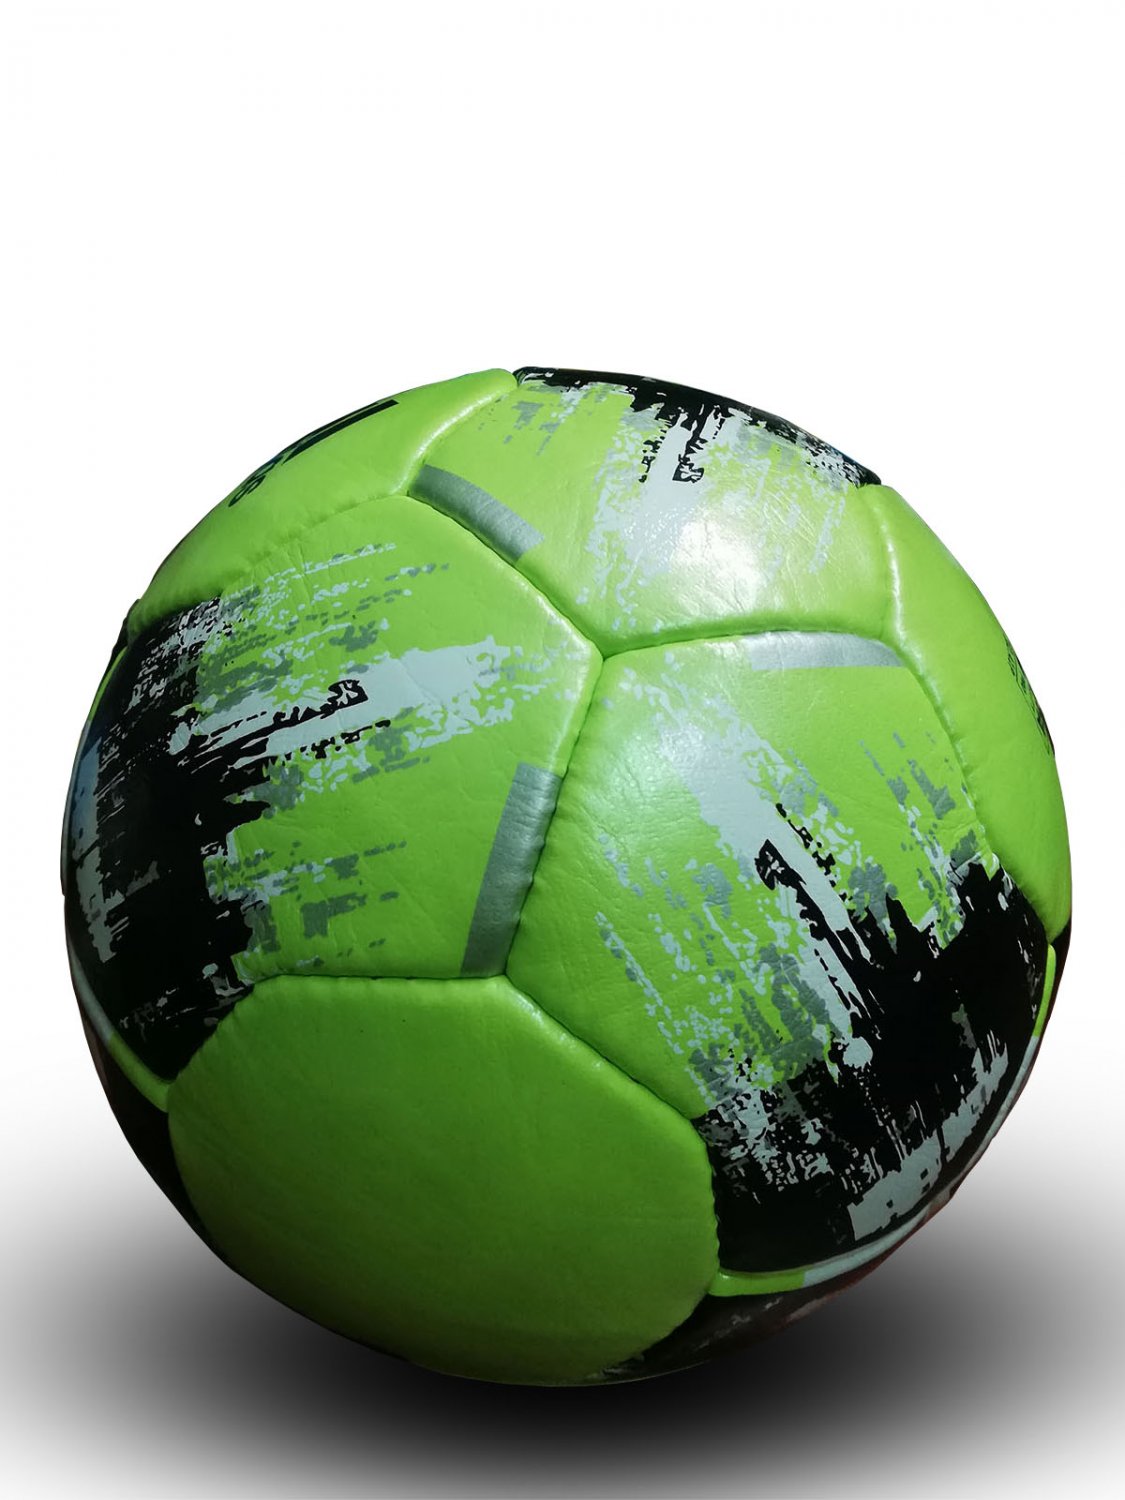 NEW ADIDAS TEAM MATCH PRO GREEN SOCCER FOOTBALL | OFFICIAL MATCH BALL ...